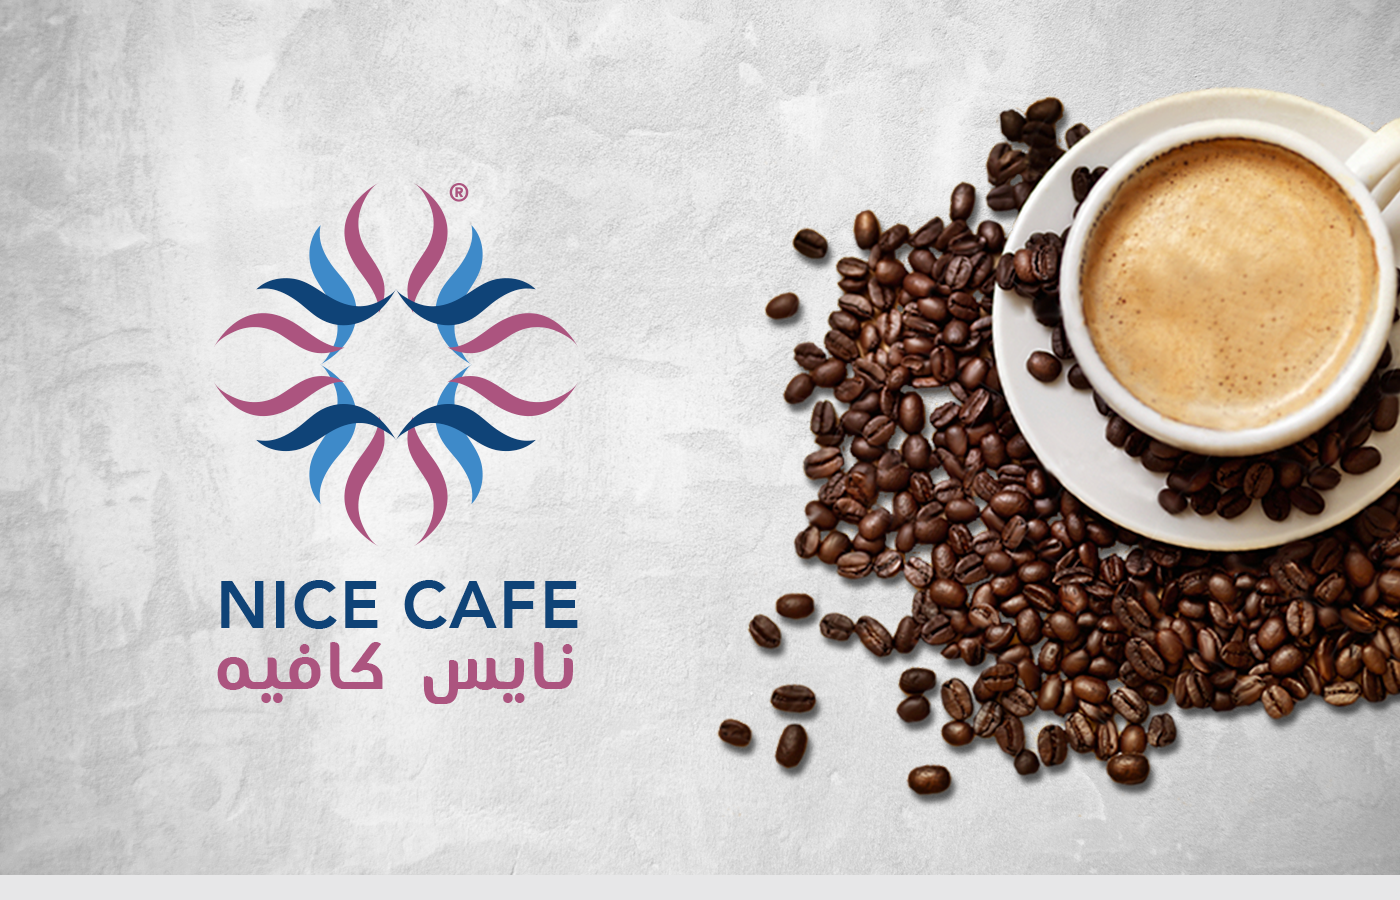 Nice Cafe Brand Identity